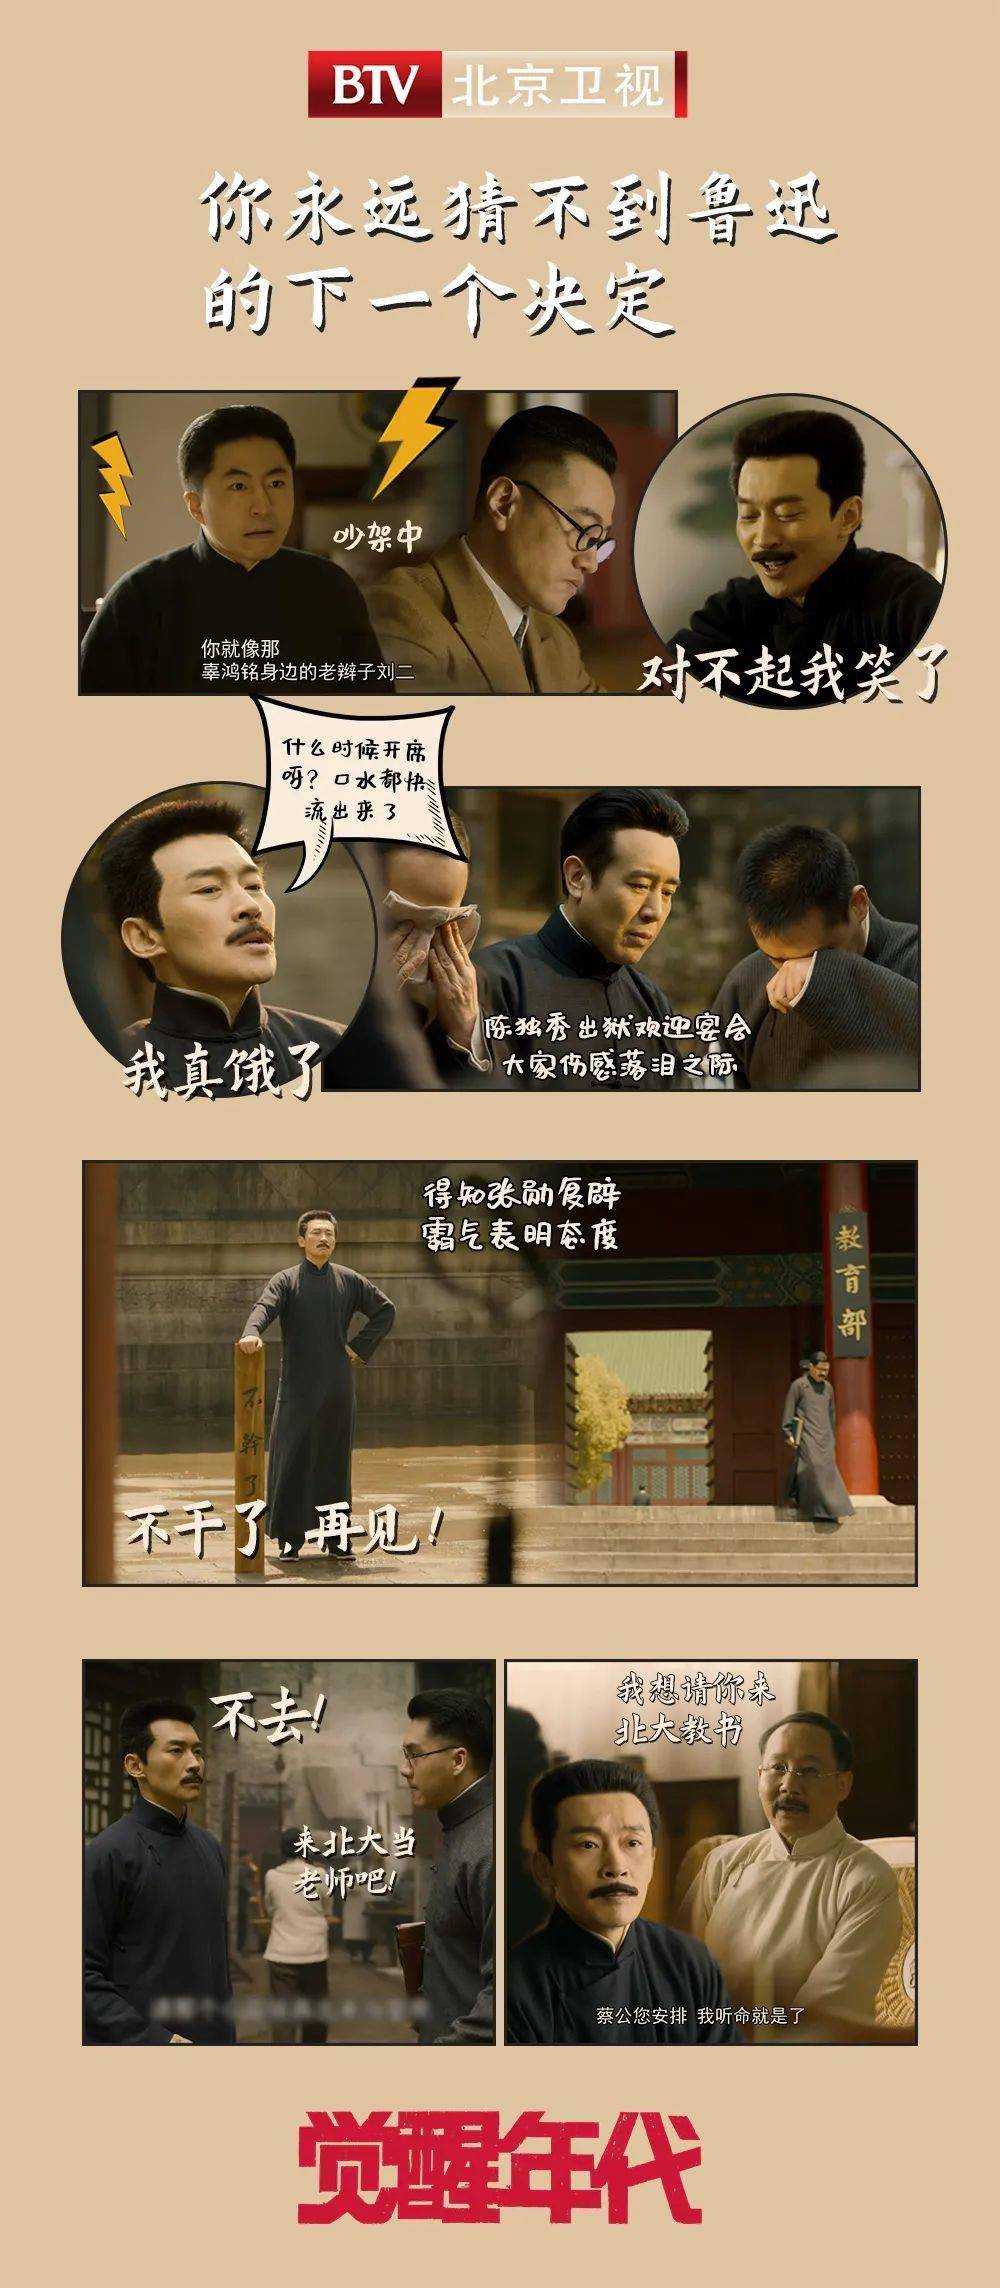 北京卫视《觉醒年代》没人能猜透鲁迅先生的小心思